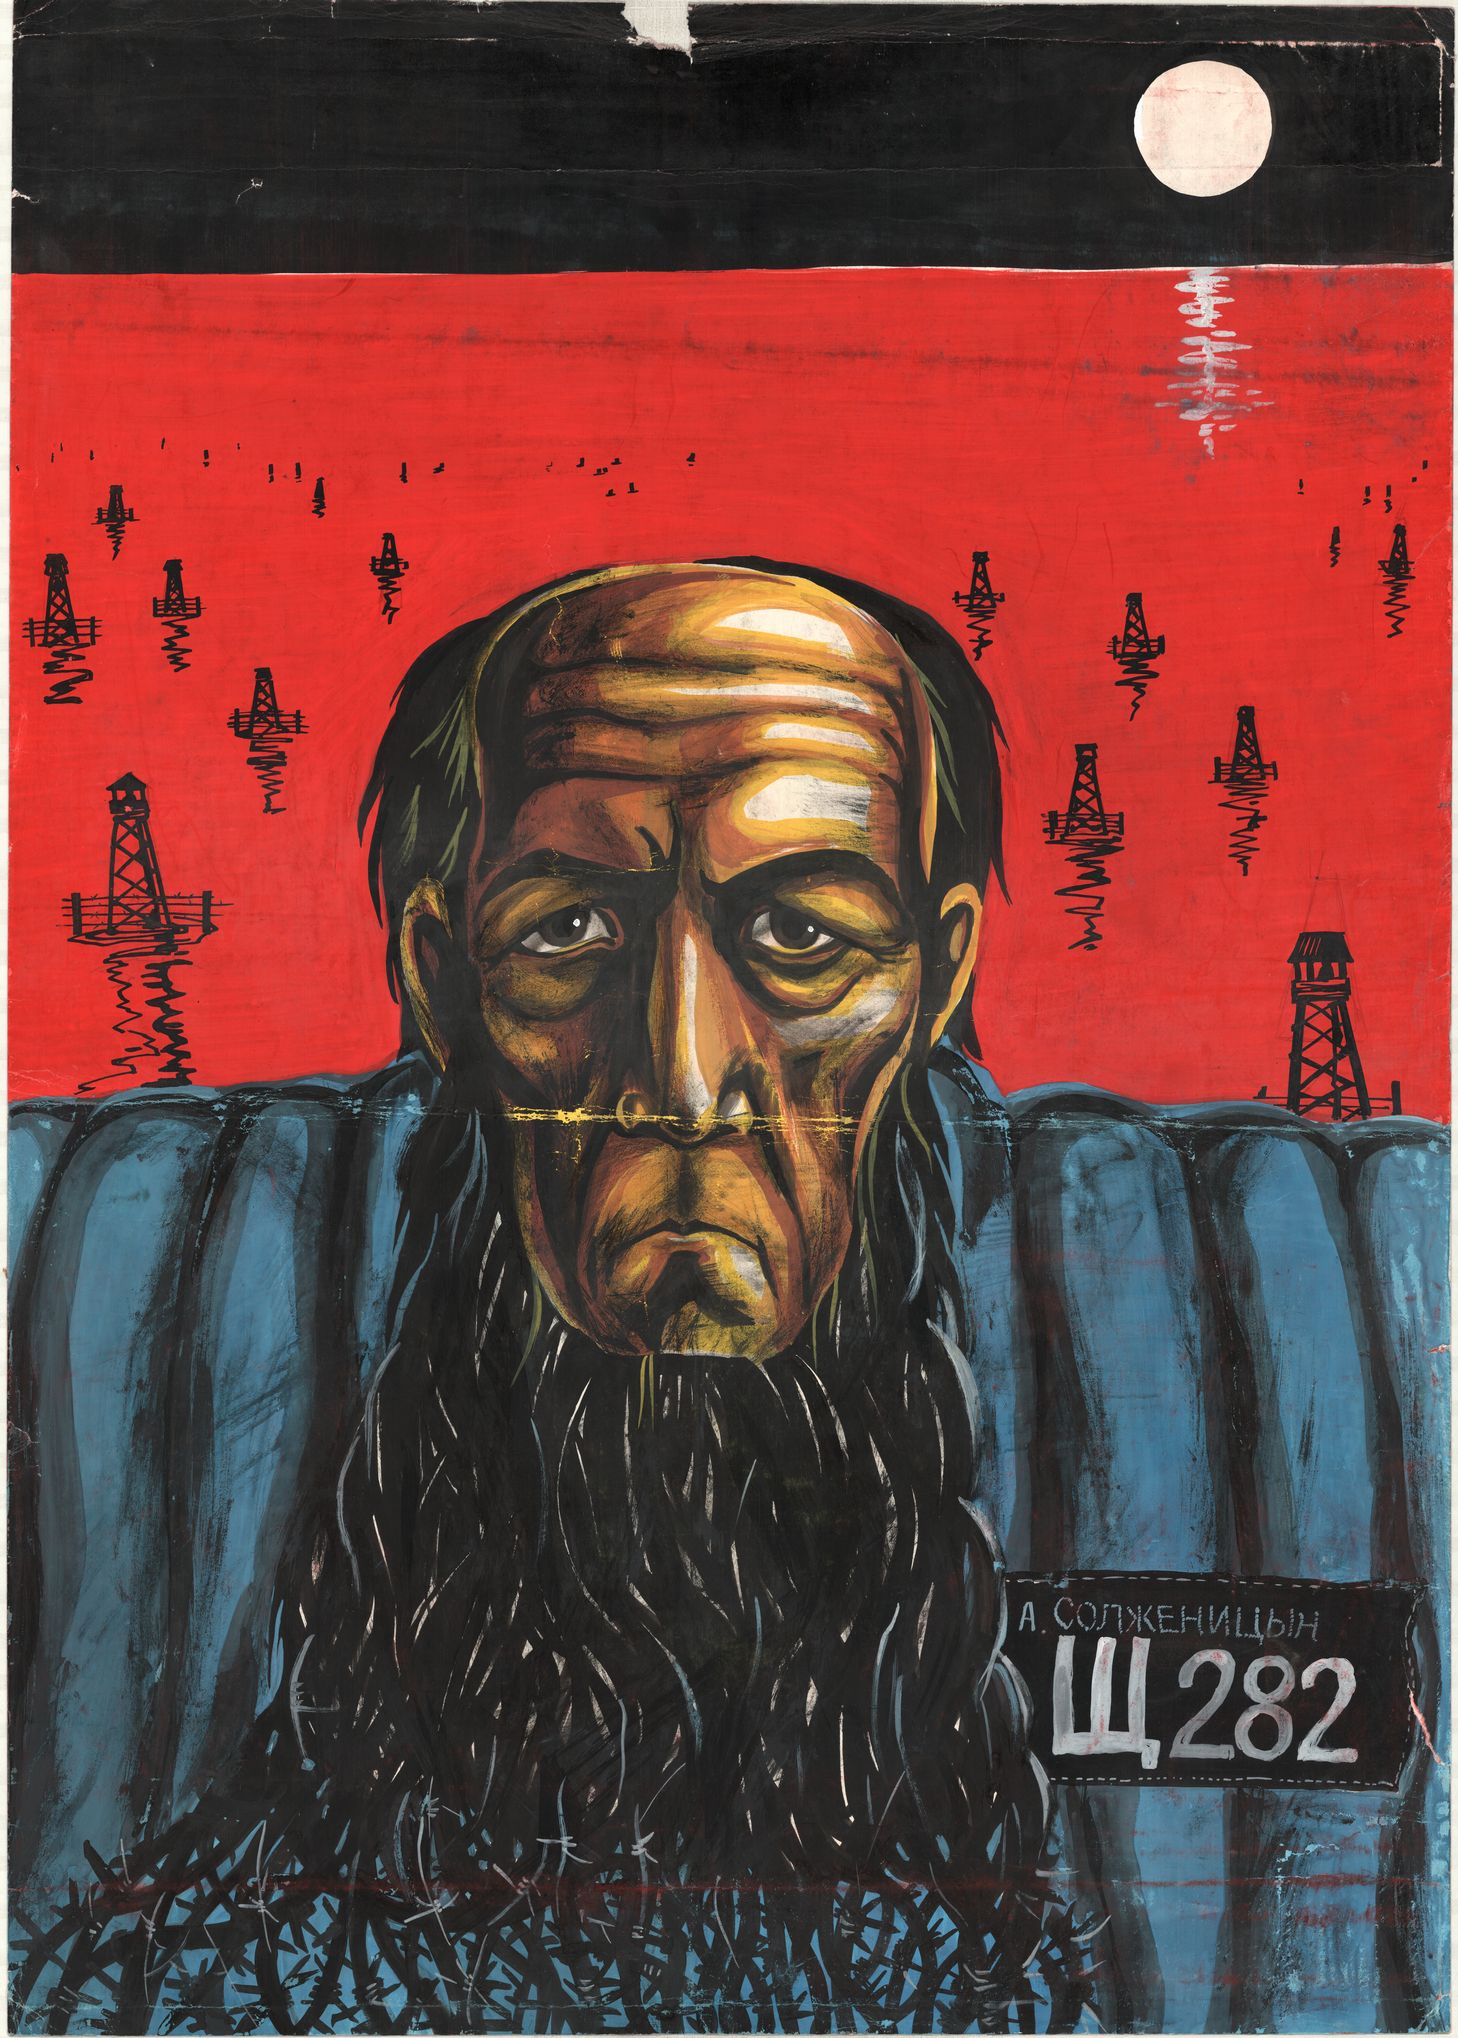 Плакат "А. Солженицын "Щ 282""